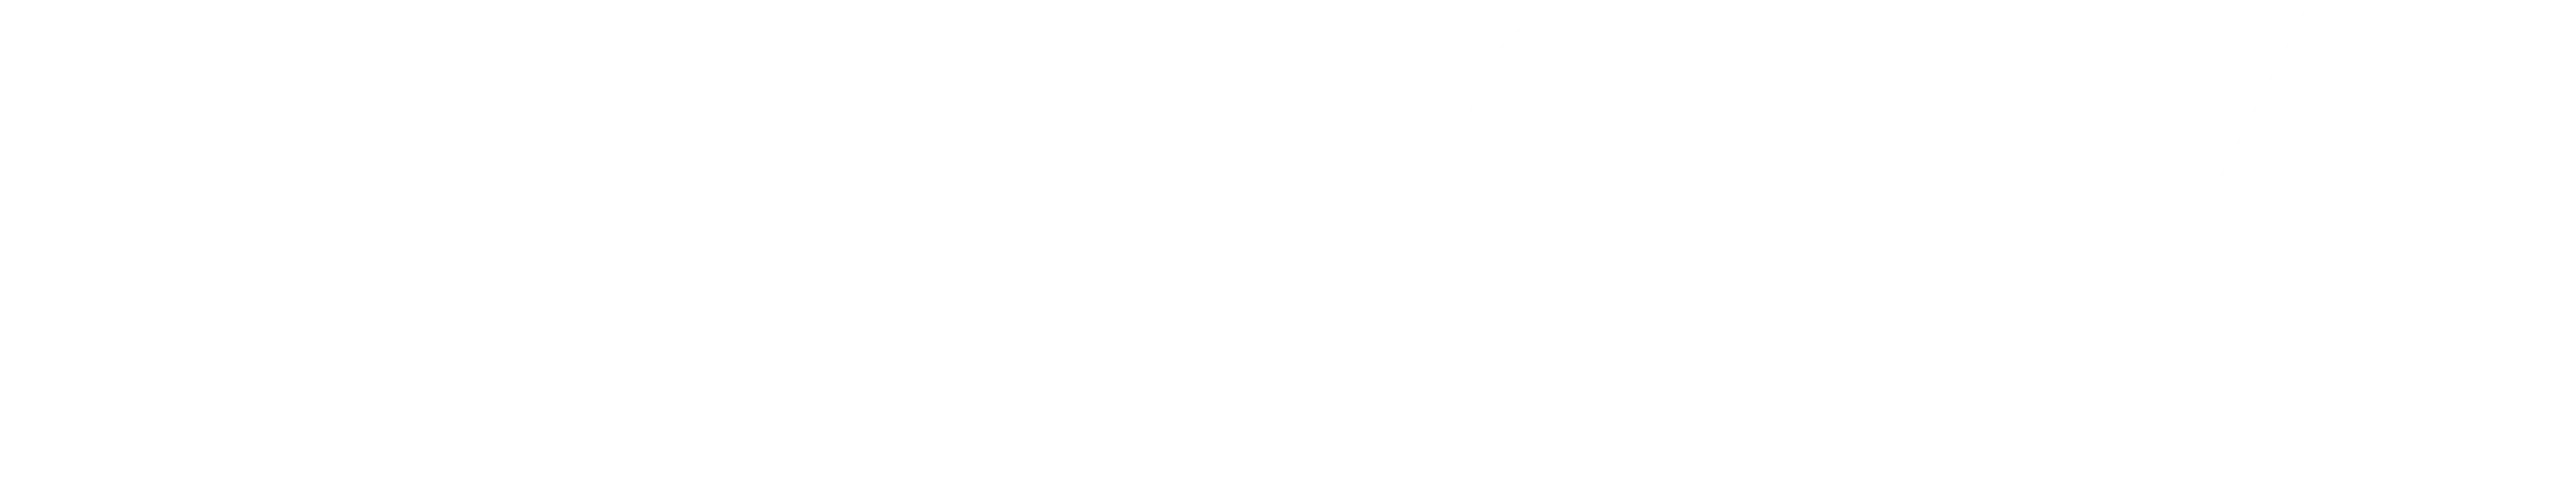 ALFA_logo